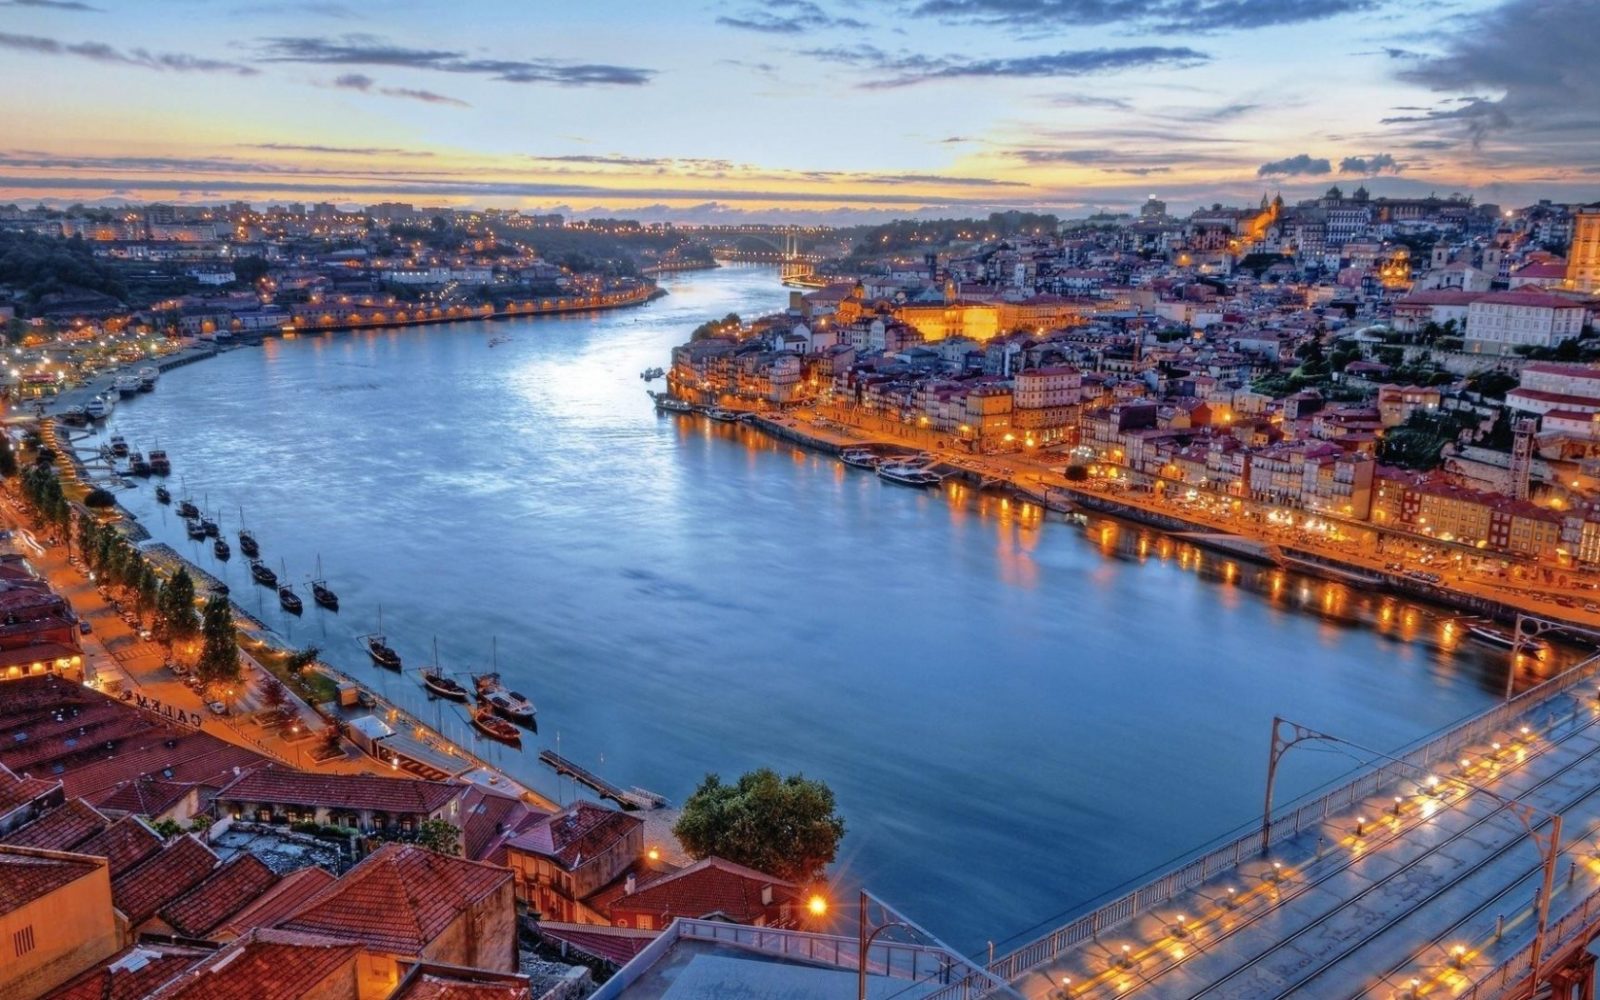 Bồ Đào Nha – Sự tăng trưởng của Kinh tế không chỉ phụ thuộc vào ngành Du lịch